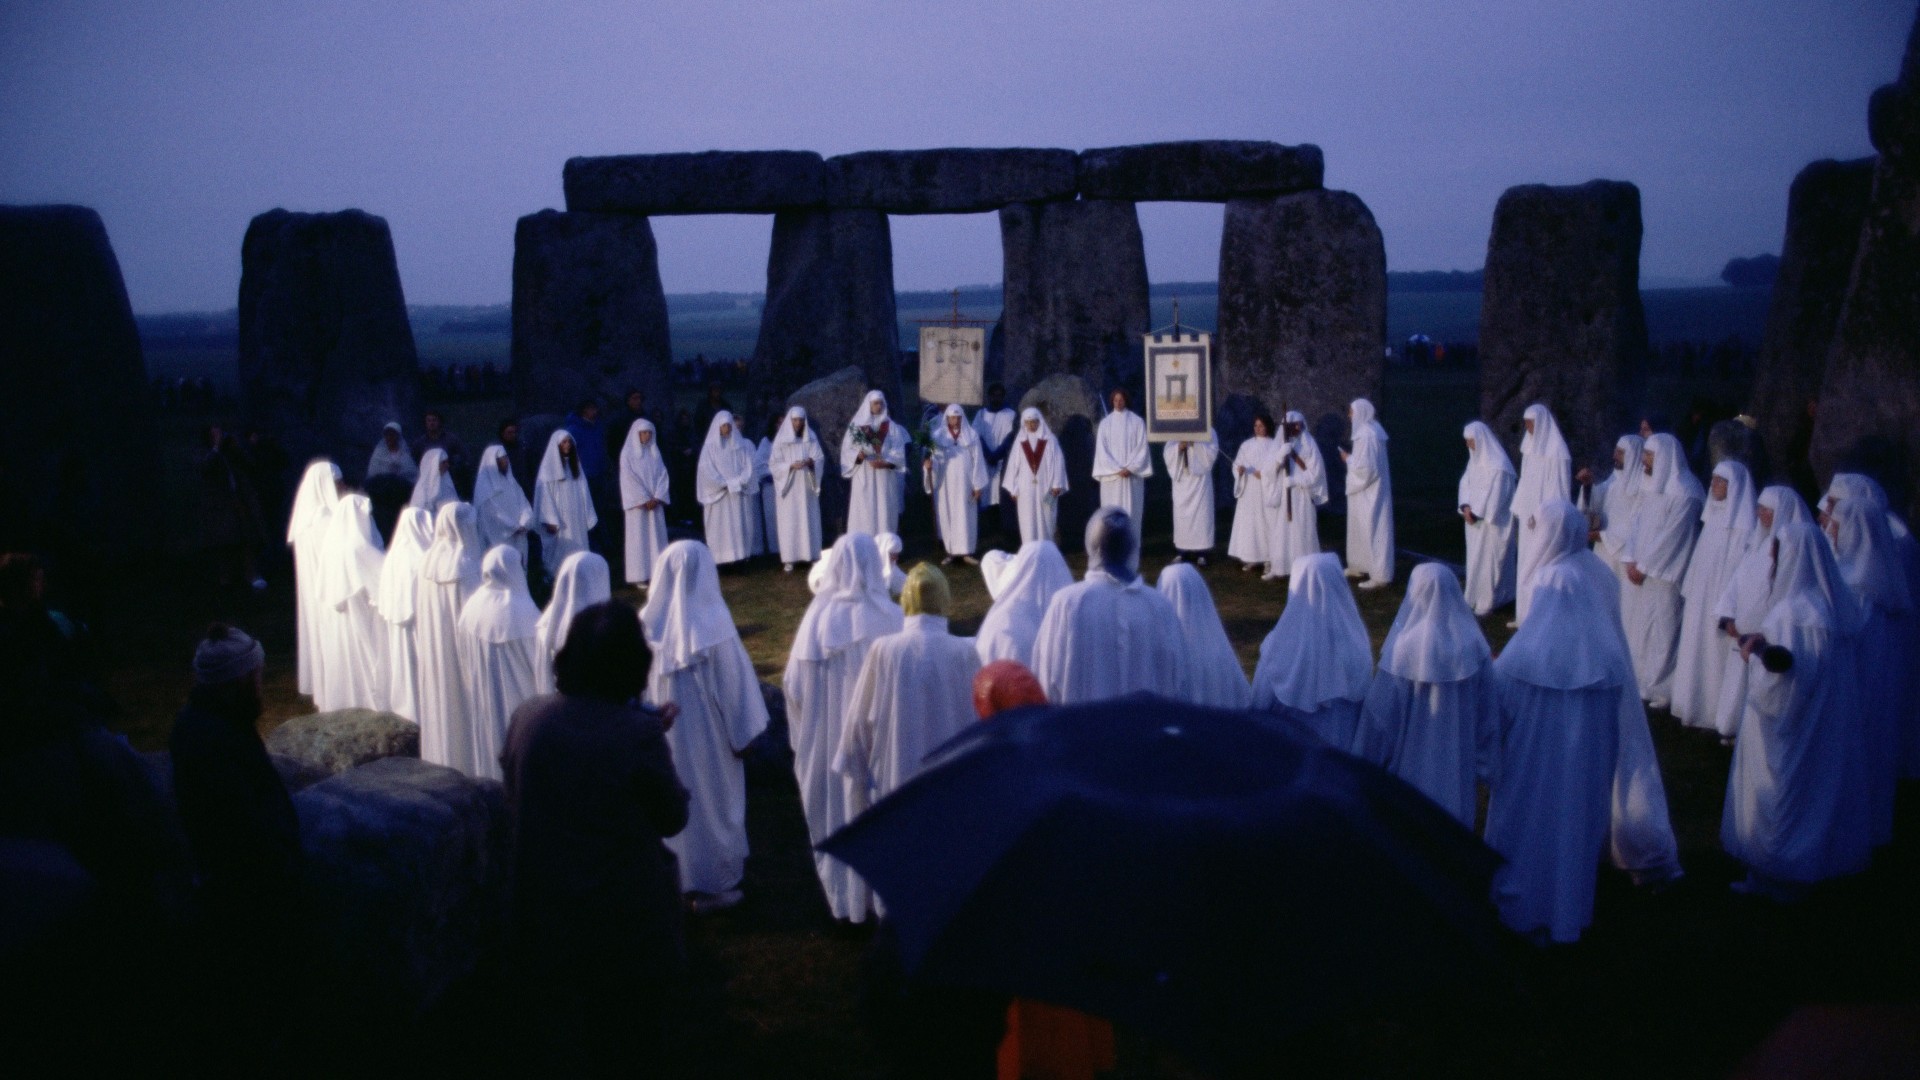 Una gran multitud de druidas vestidos con túnicas blancas en una reunión nocturna en Stonehenge en Wiltshire, Inglaterra.